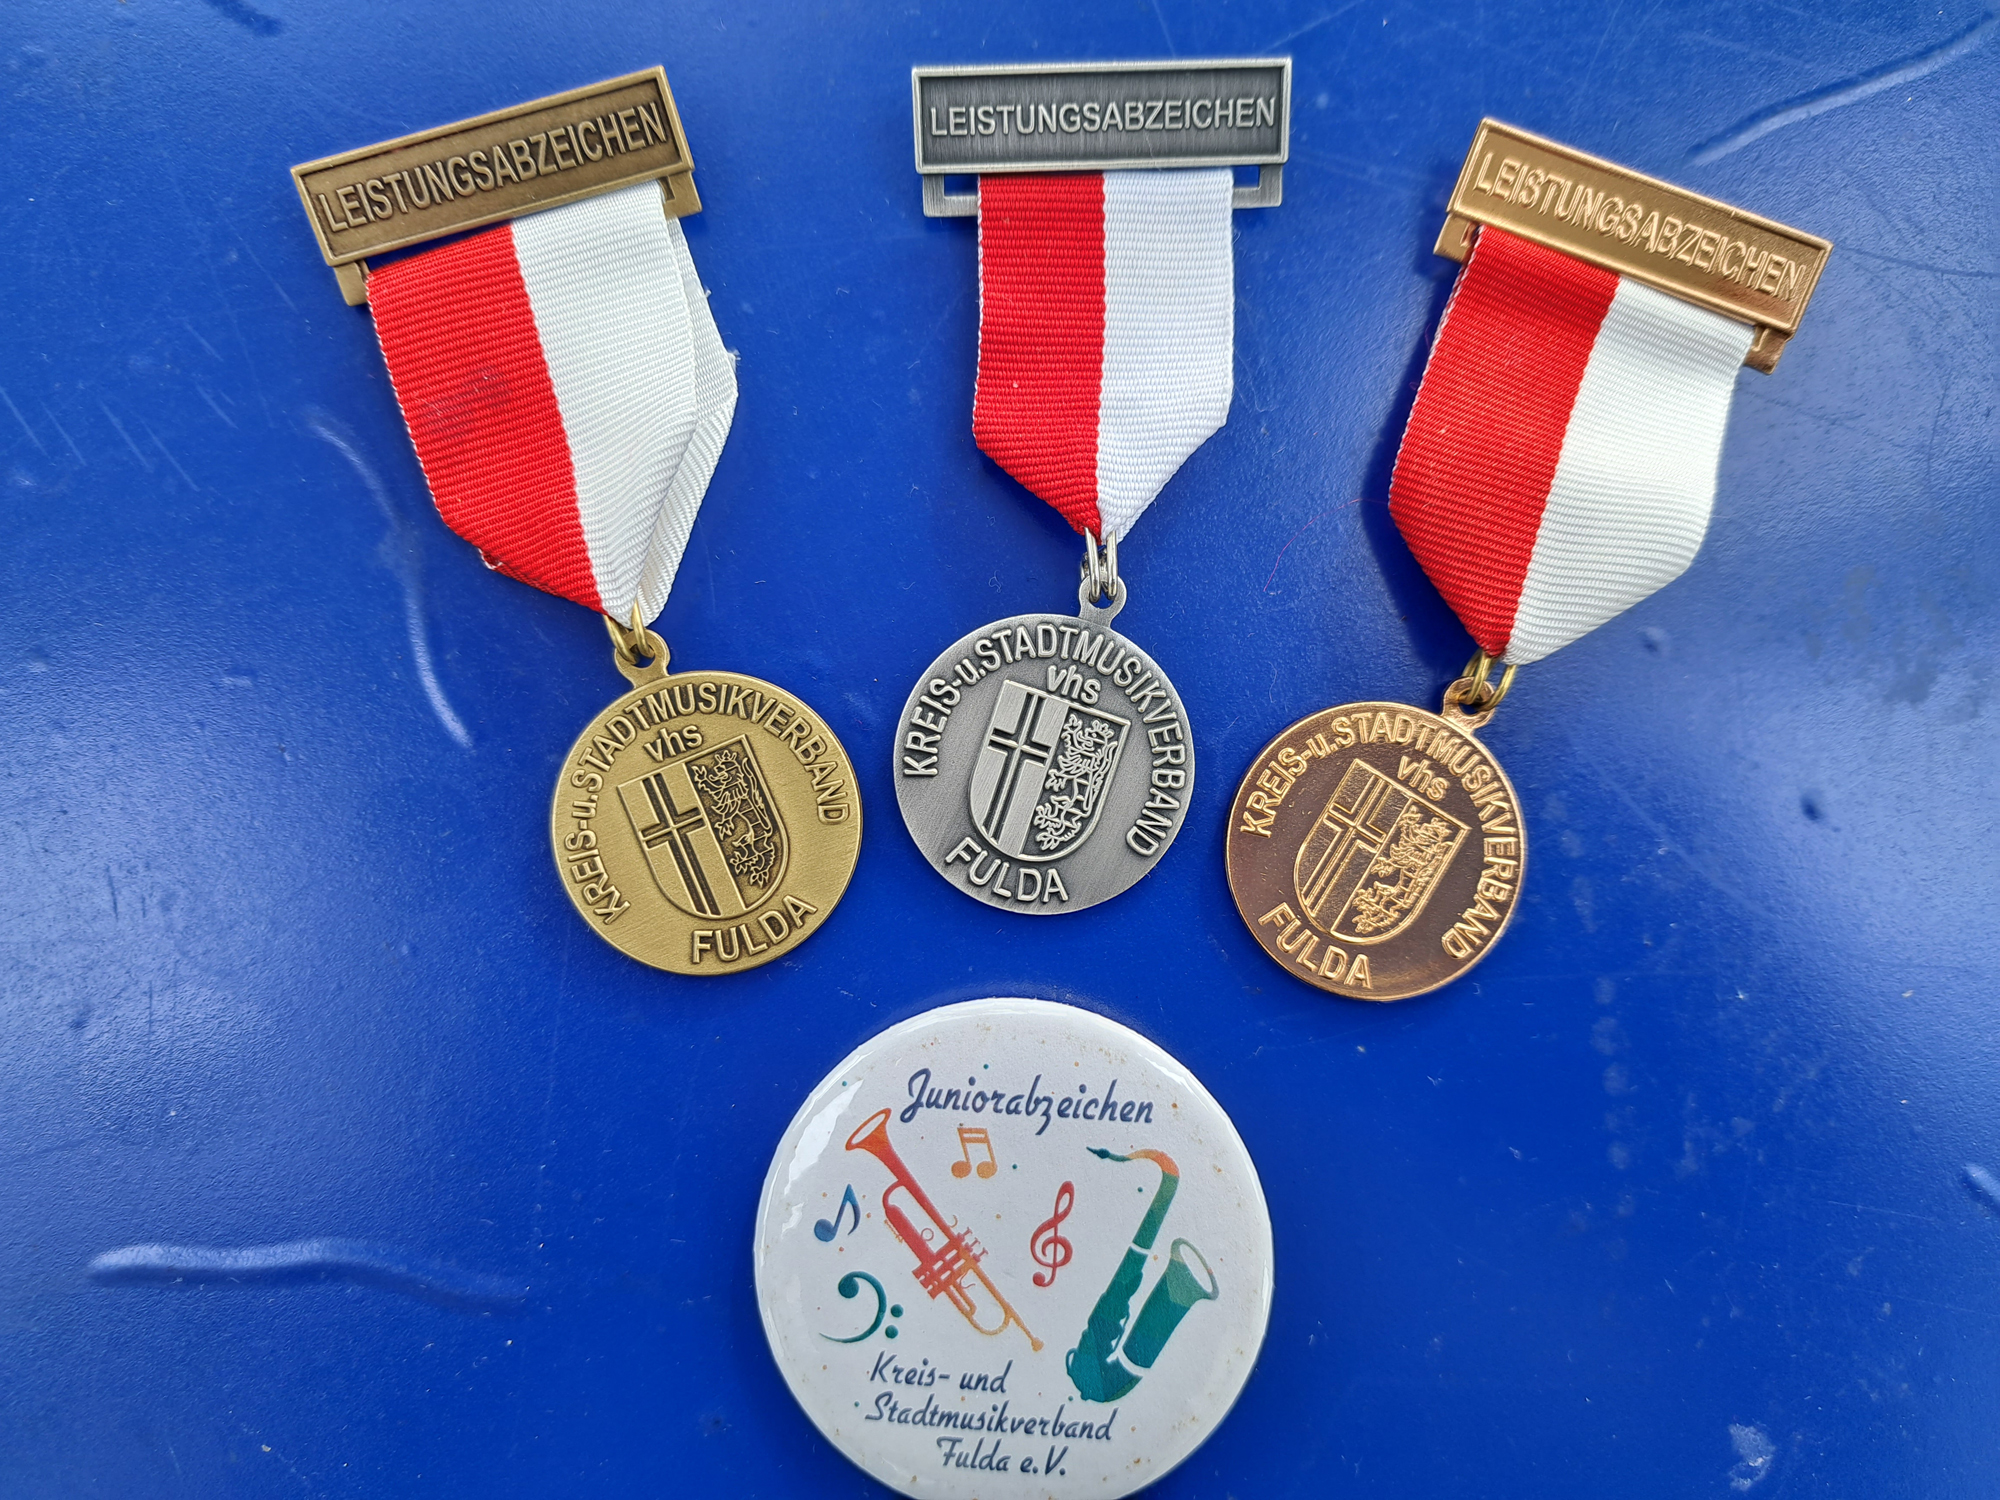 Jugendleistungsabzeichen in den Kategorien Bronze, Silber und Gold sowie das neue Junkorabzeichen